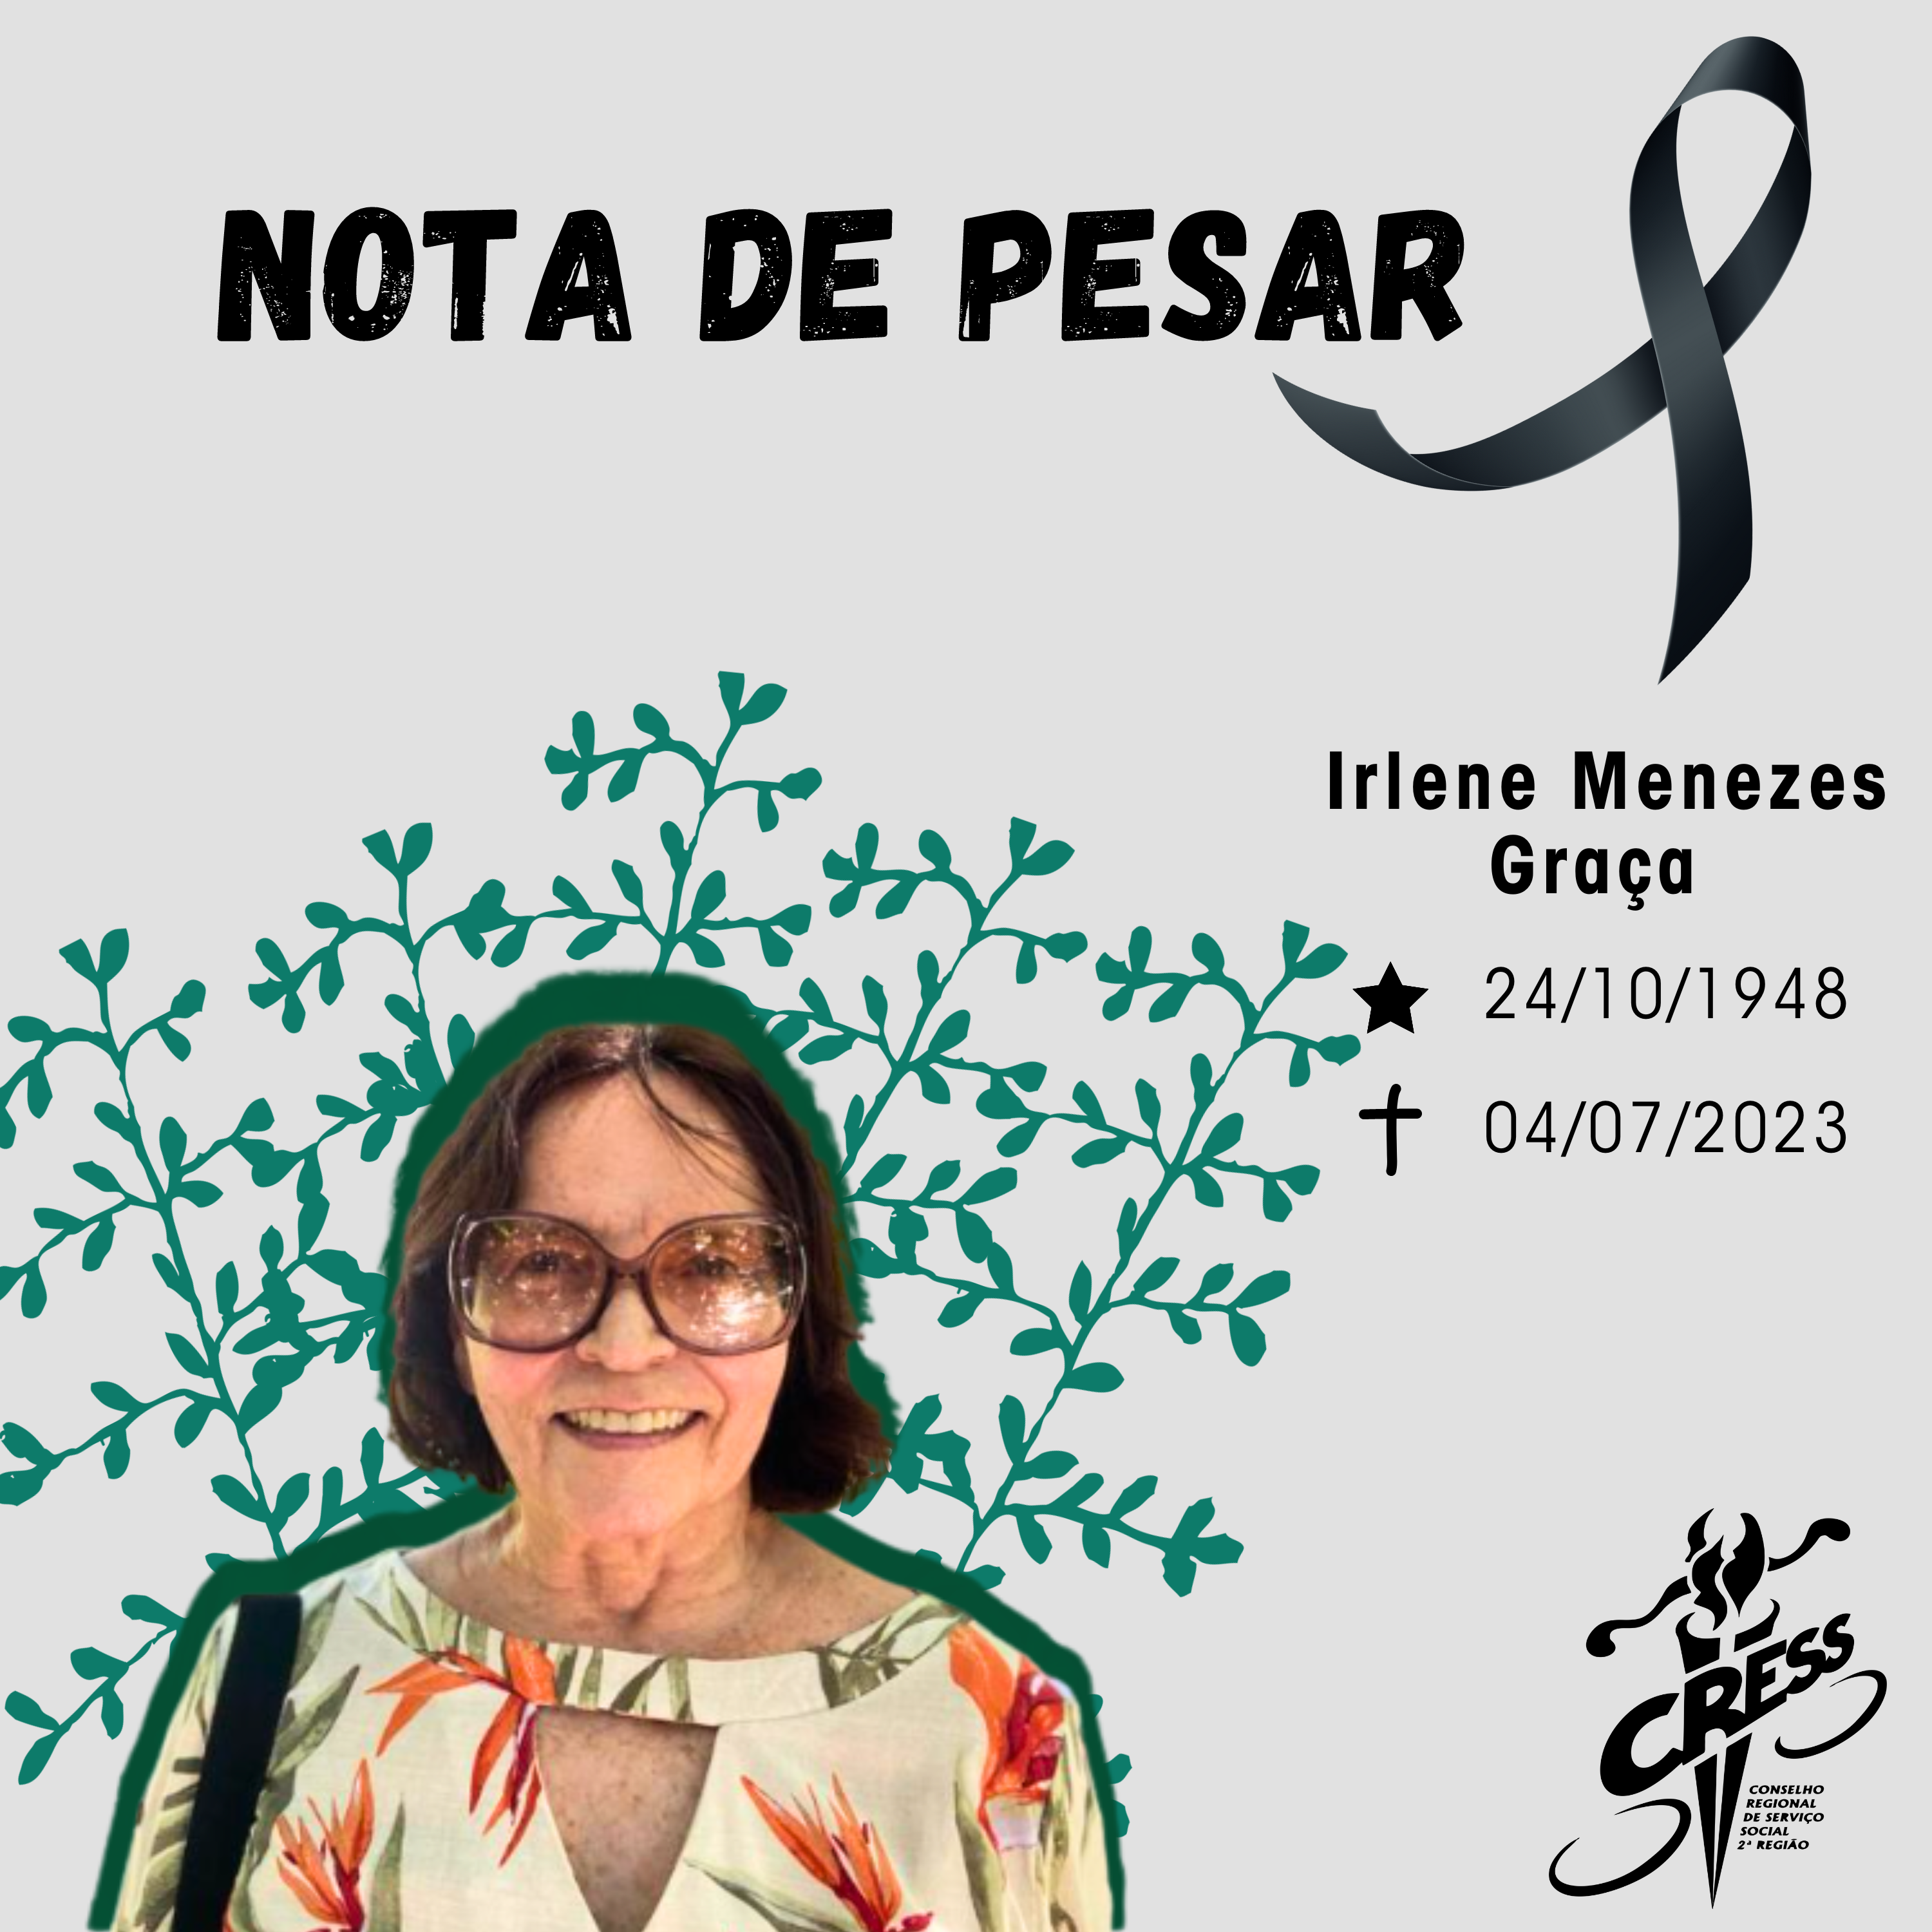 Nota de pesar - Irlene Menezes